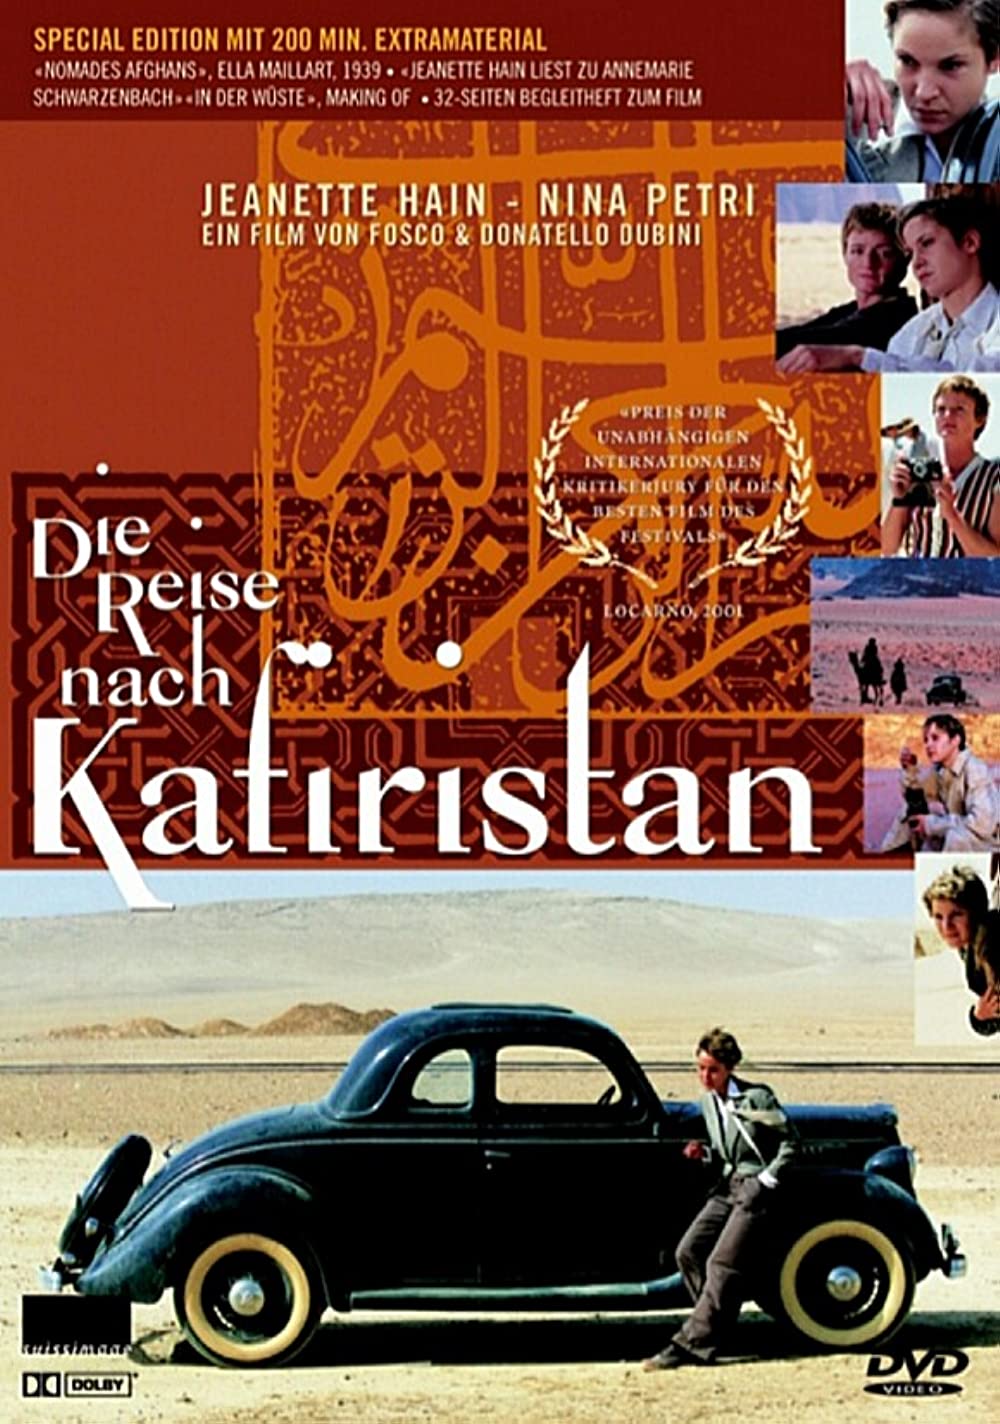 Filmbeschreibung zu Die Reise nach Kafiristan